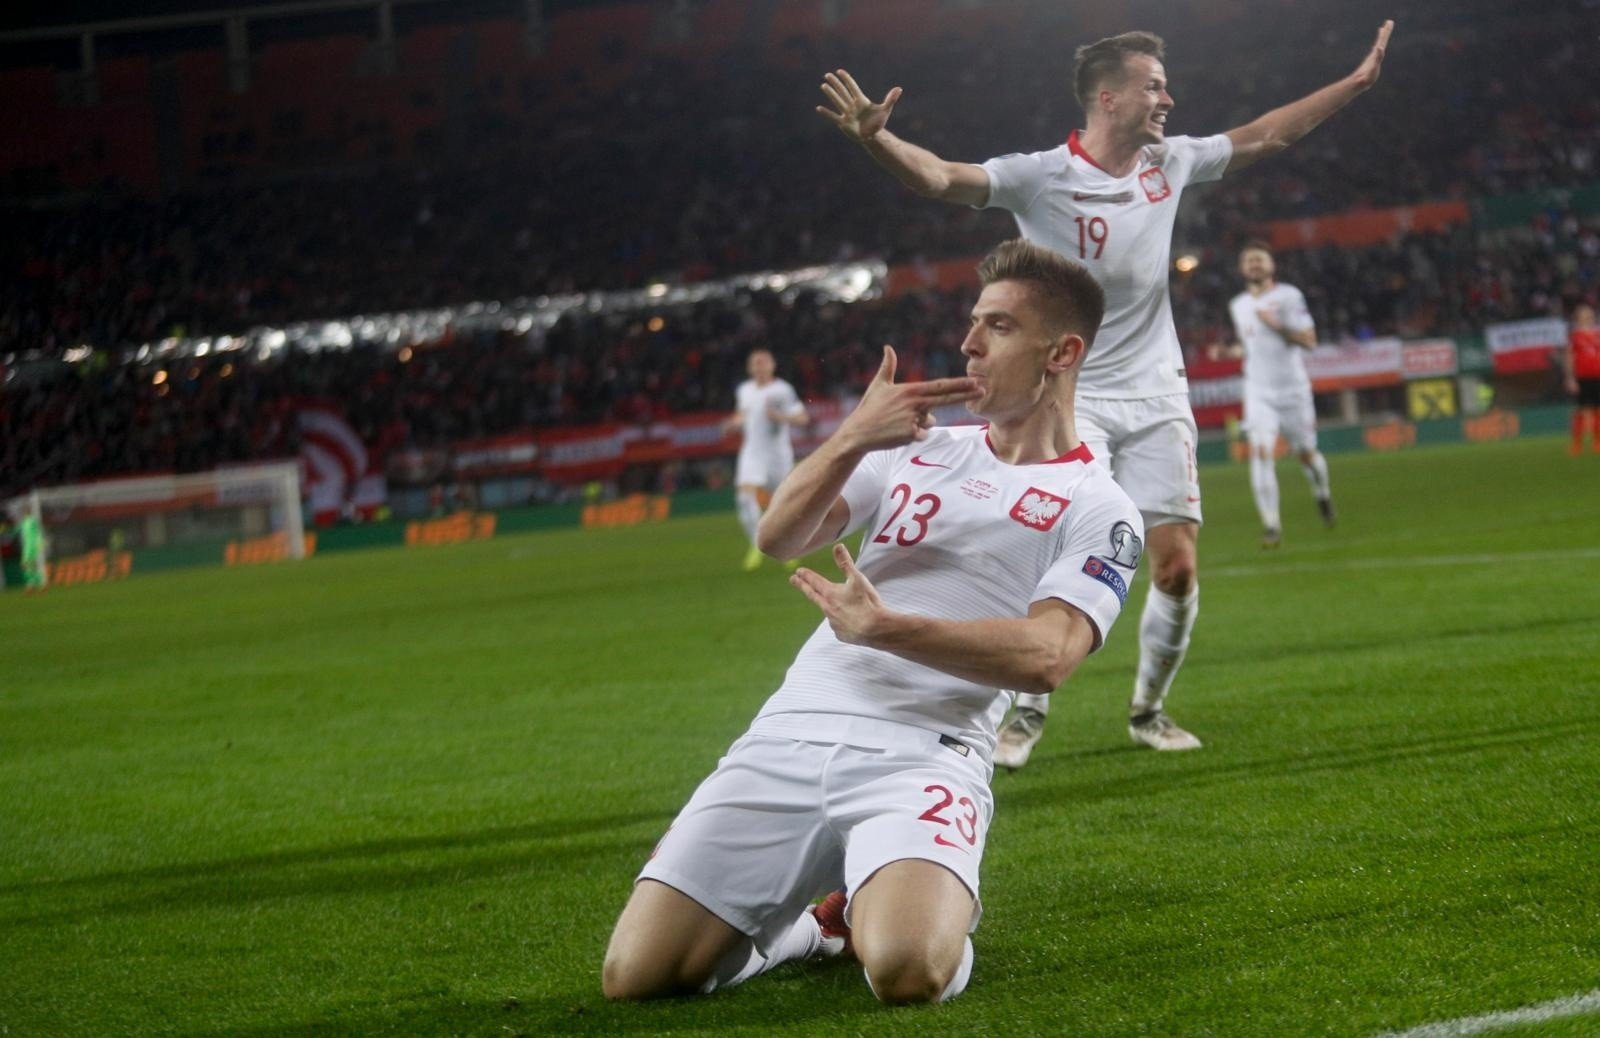 Mecz Austria - Polska 0:1. Krzysztof Piątek osłodził początek eliminacji!  To pierwsza wygrana za kadencji Jerzego Brzęczka | Gol24